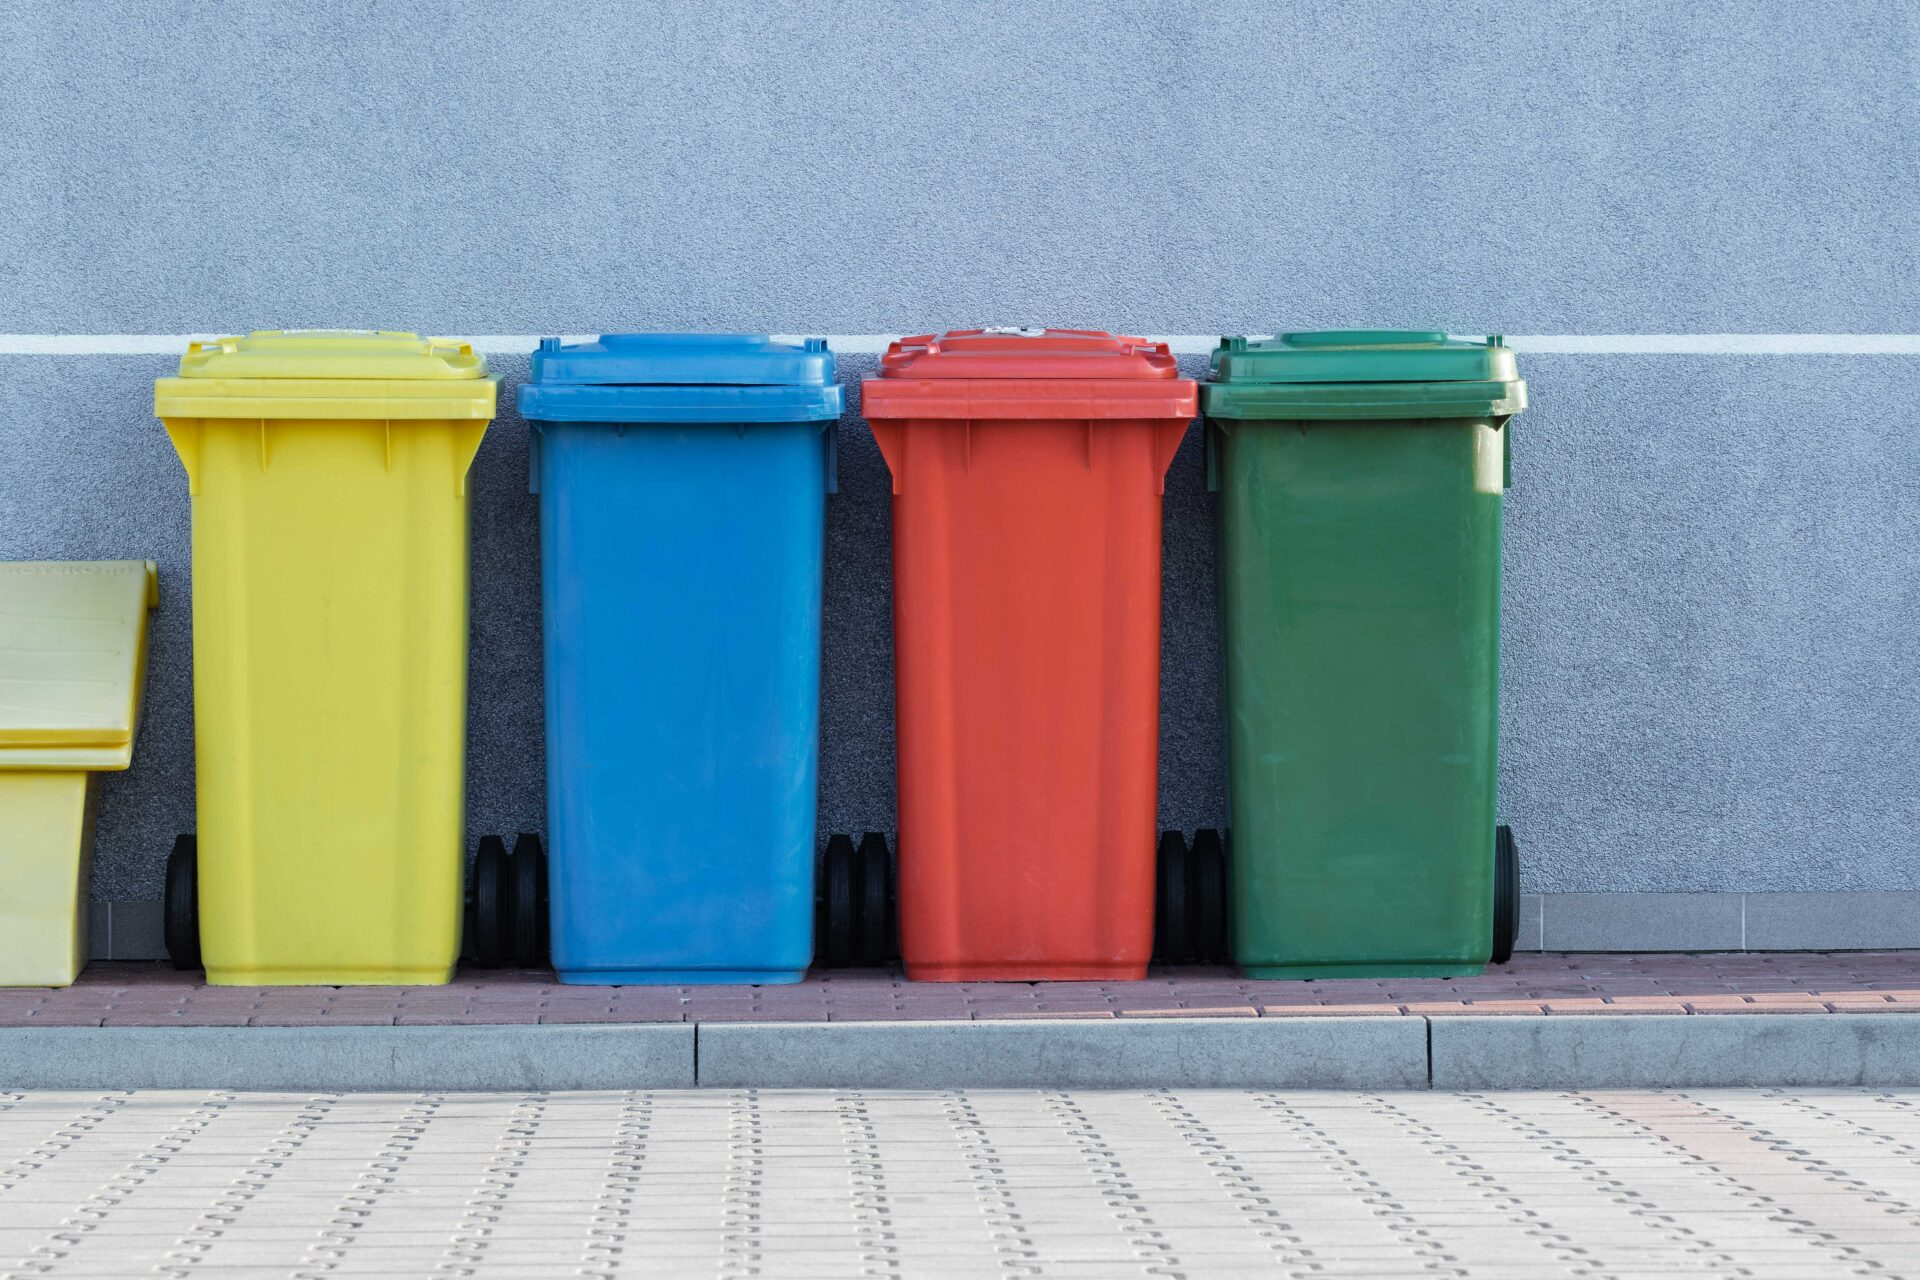 Vysoké ceny energií ohrozia recykláciu, upozorňuje Asociácia pre recykláciu obalov